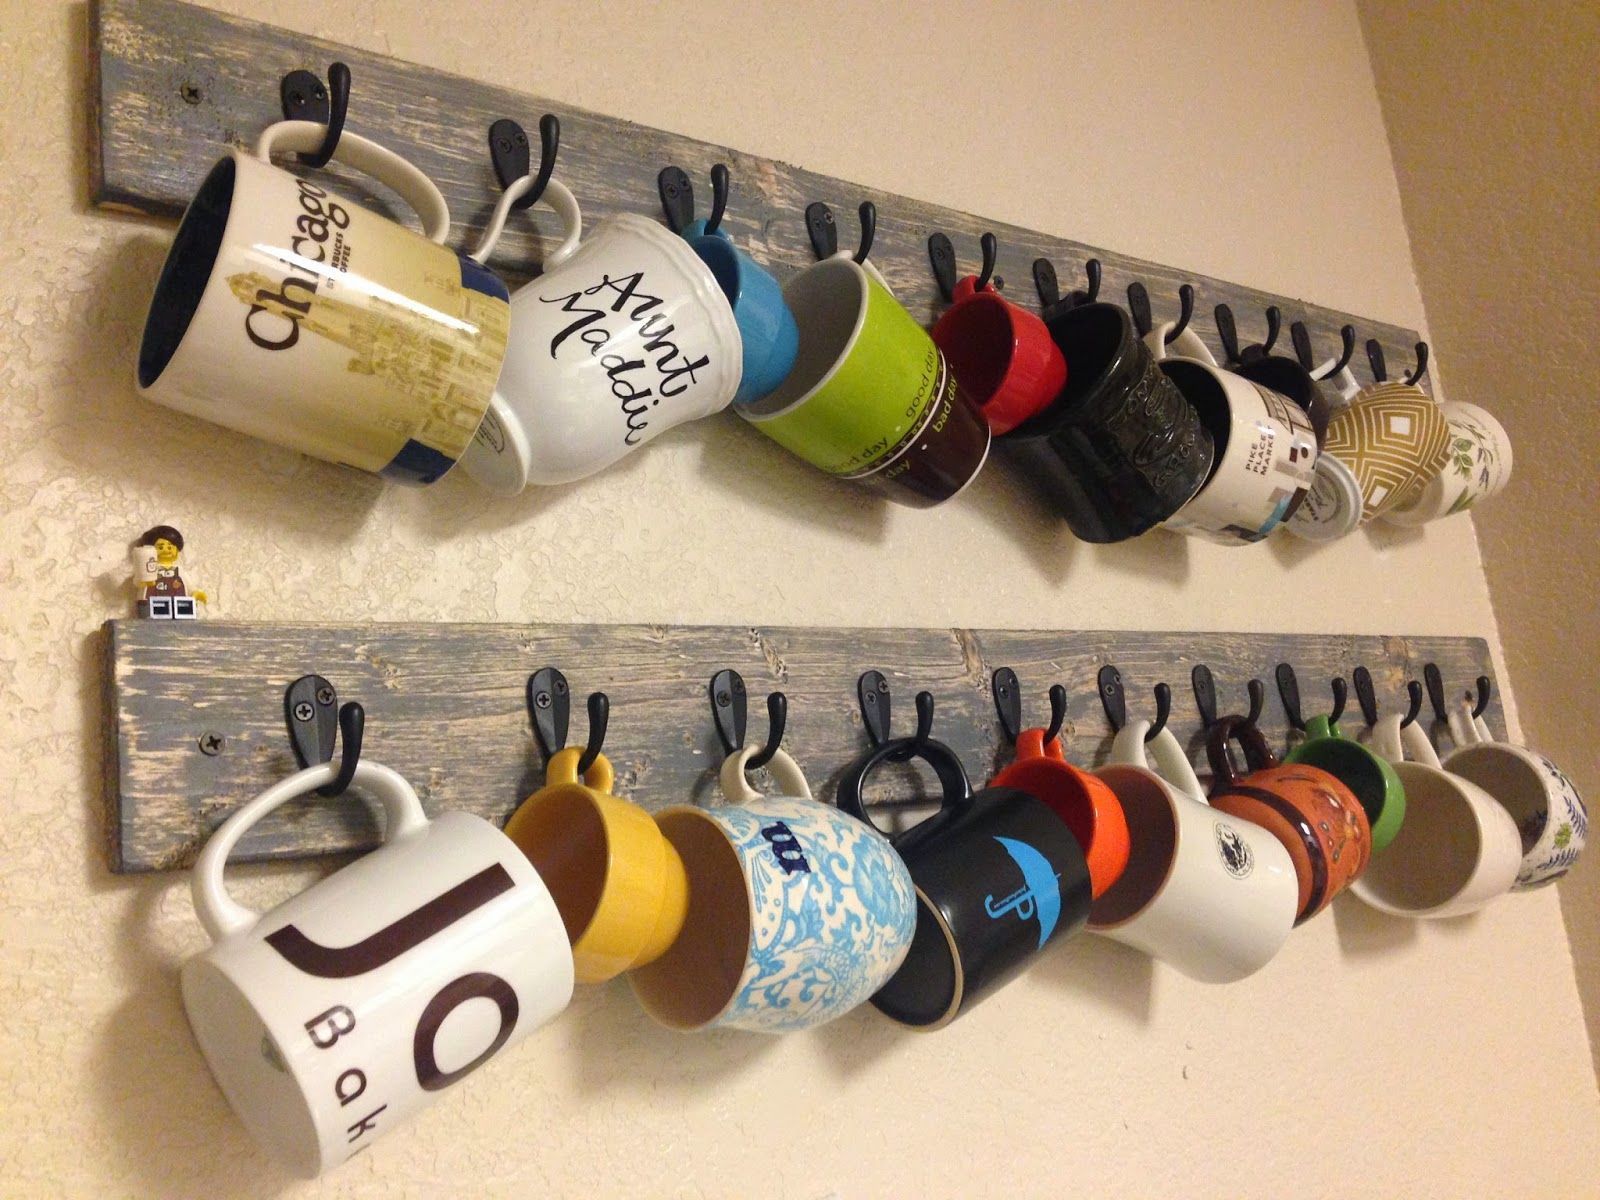 A Light That Shines: Coffee Mug Racks